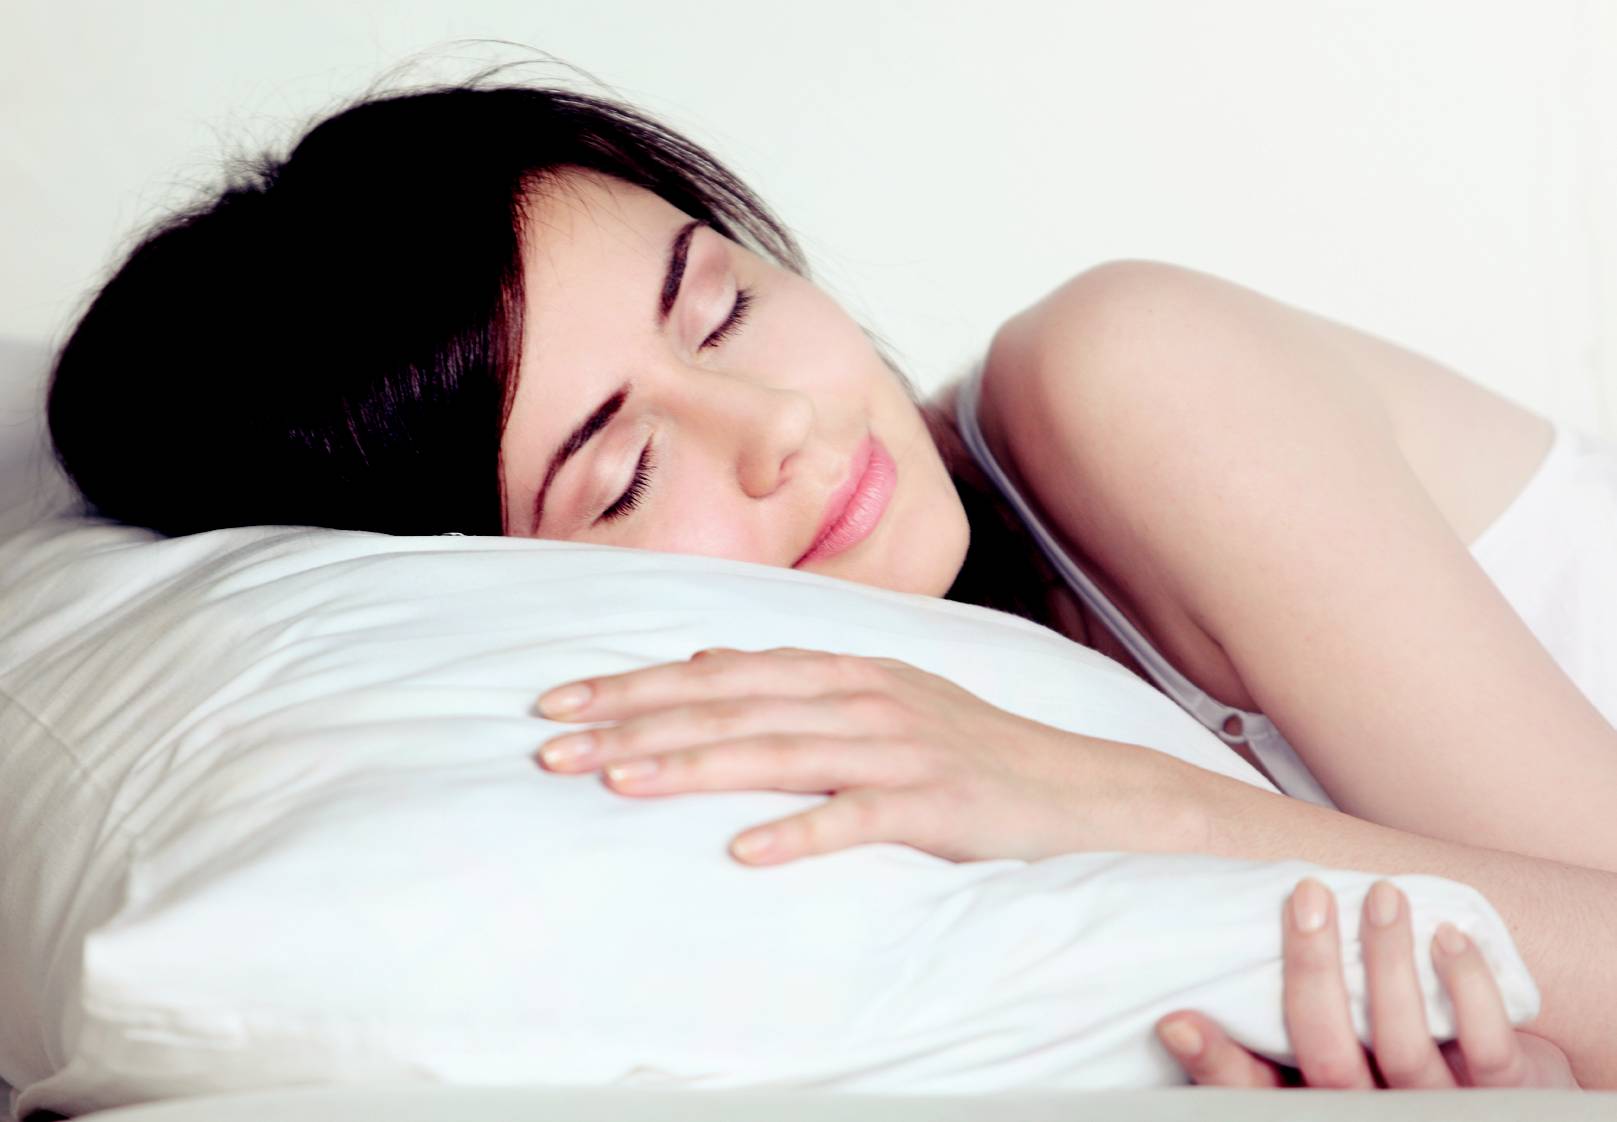   Thở bằng mũi giúp bạn ngủ ngon hơn, cung cấp đủ oxy cho cơ thể  